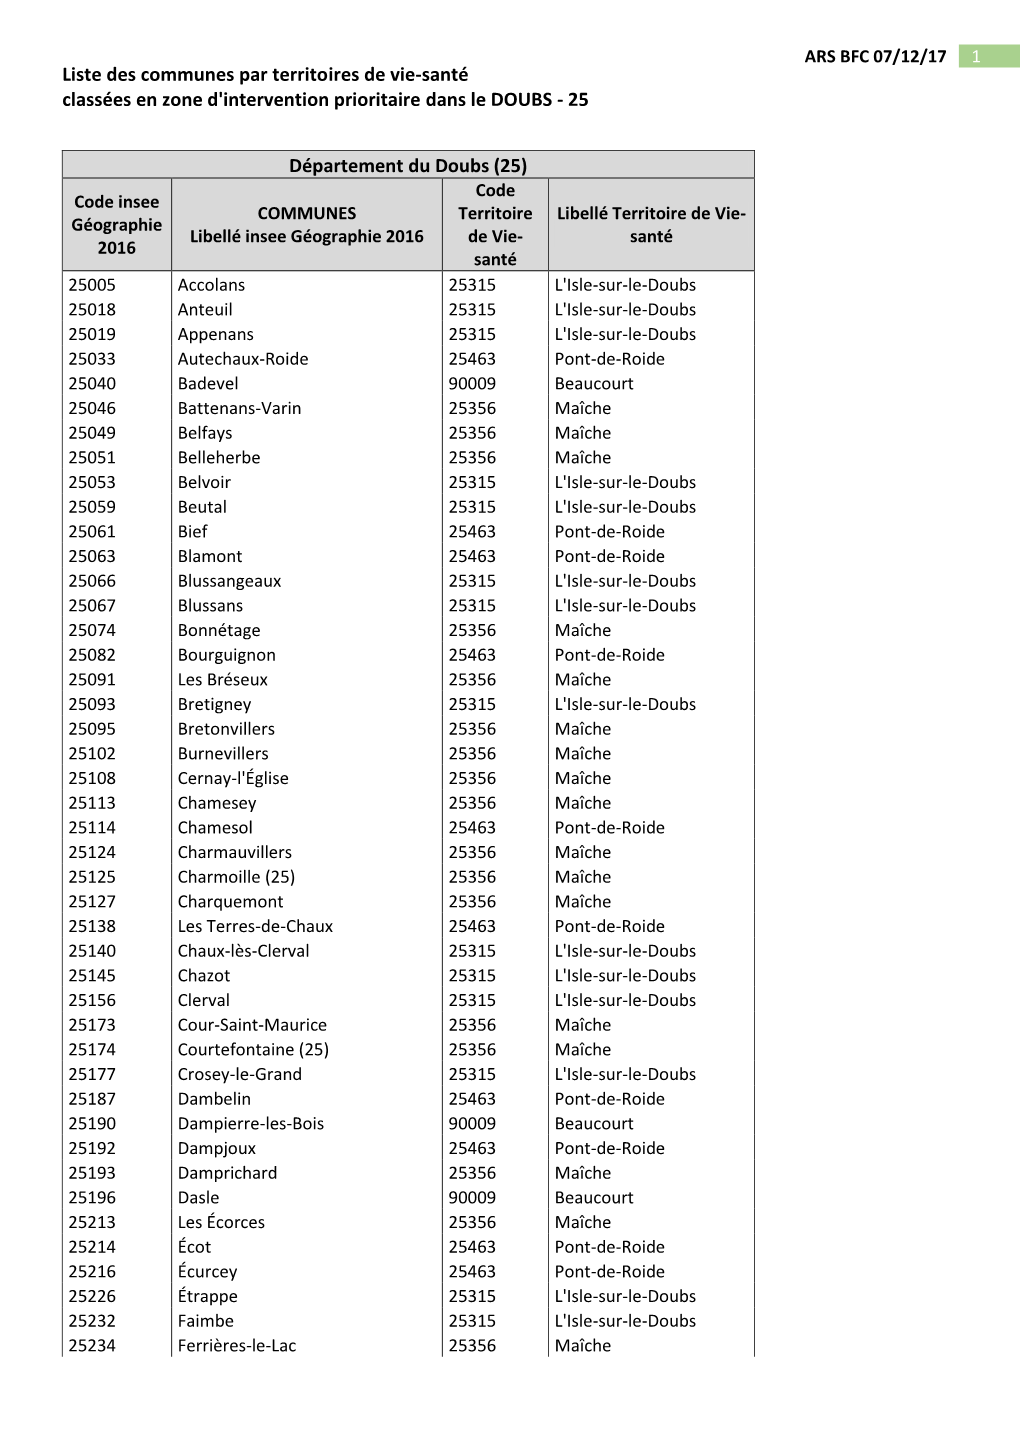 Liste Des Communes Par Territoires De Vie-Santé Classées En Zone D'intervention Prioritaire Dans Le DOUBS - 25